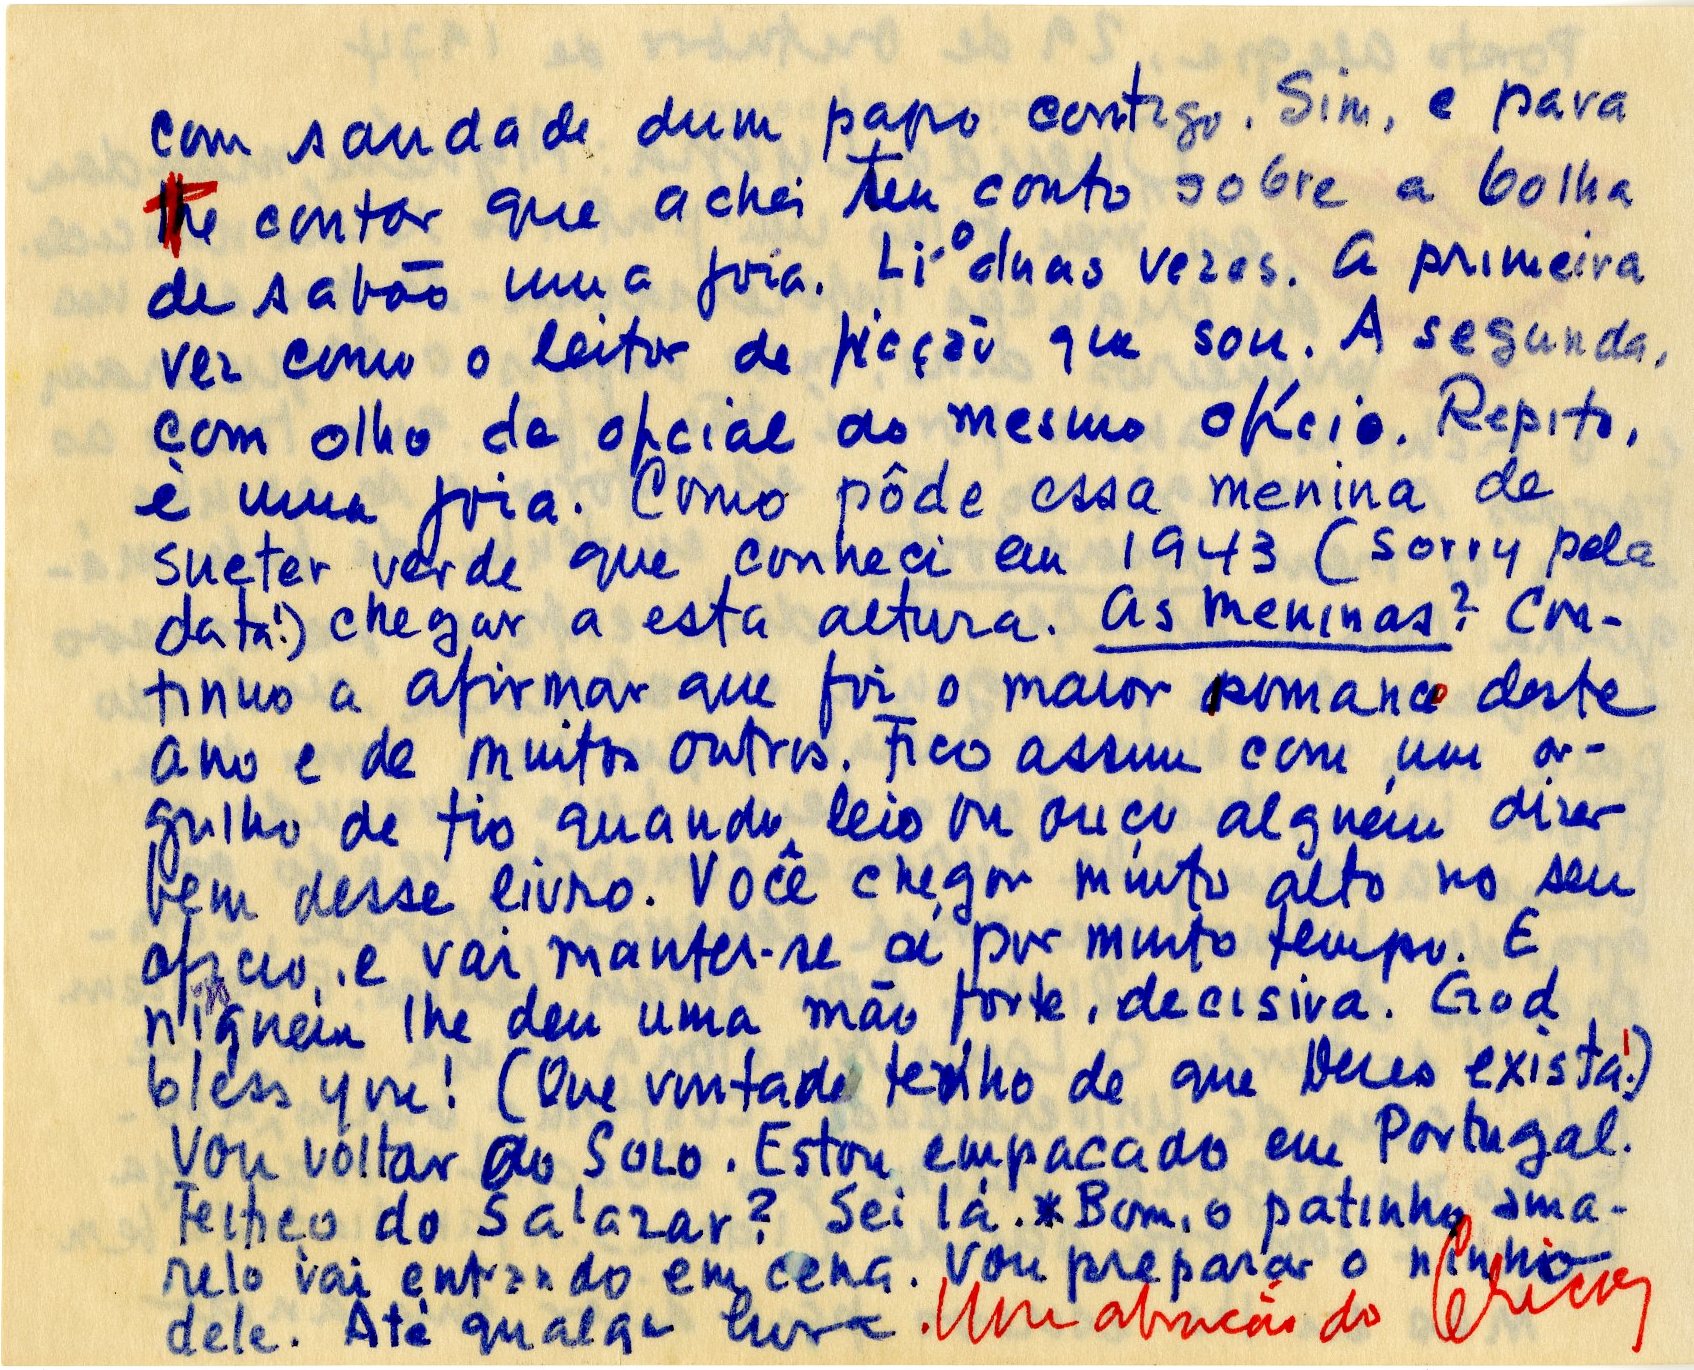 Carta de Erico Verissimo a Lygia Fagundes Telles, 29 de outubro de 1974. Arquivo Lygia Fagundes Telles / Acervo IMS